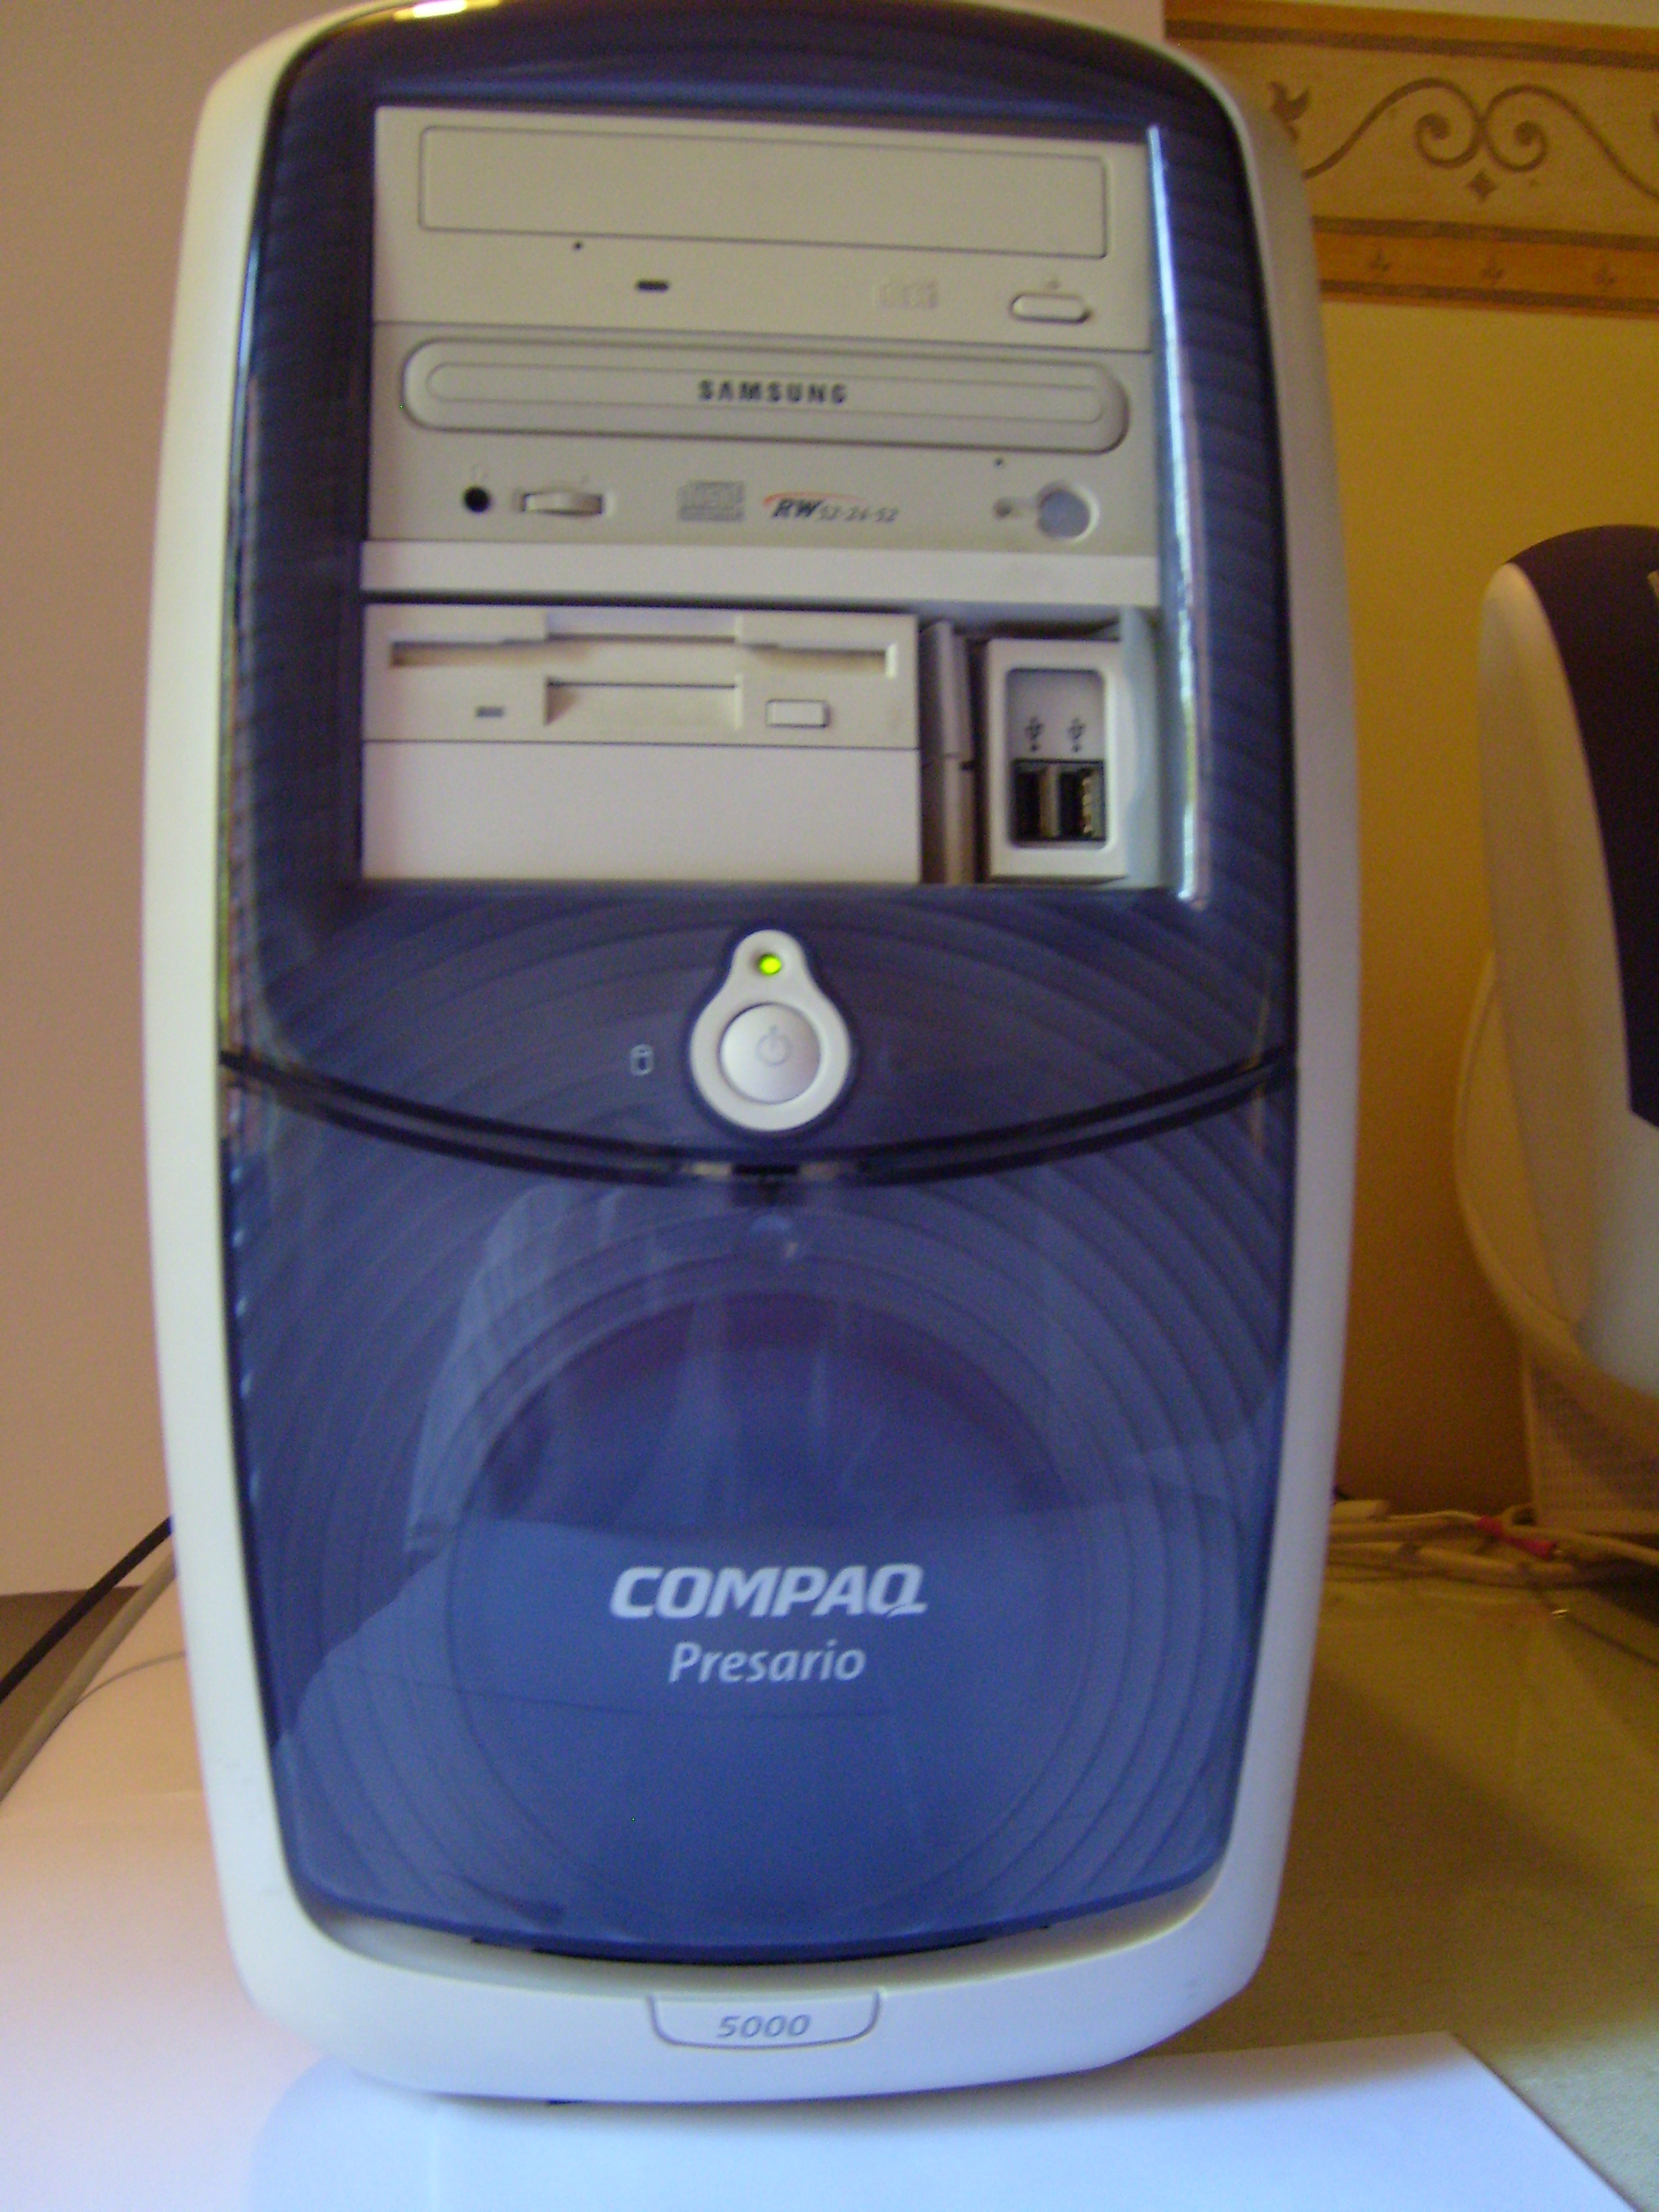 old compaq presario desktop